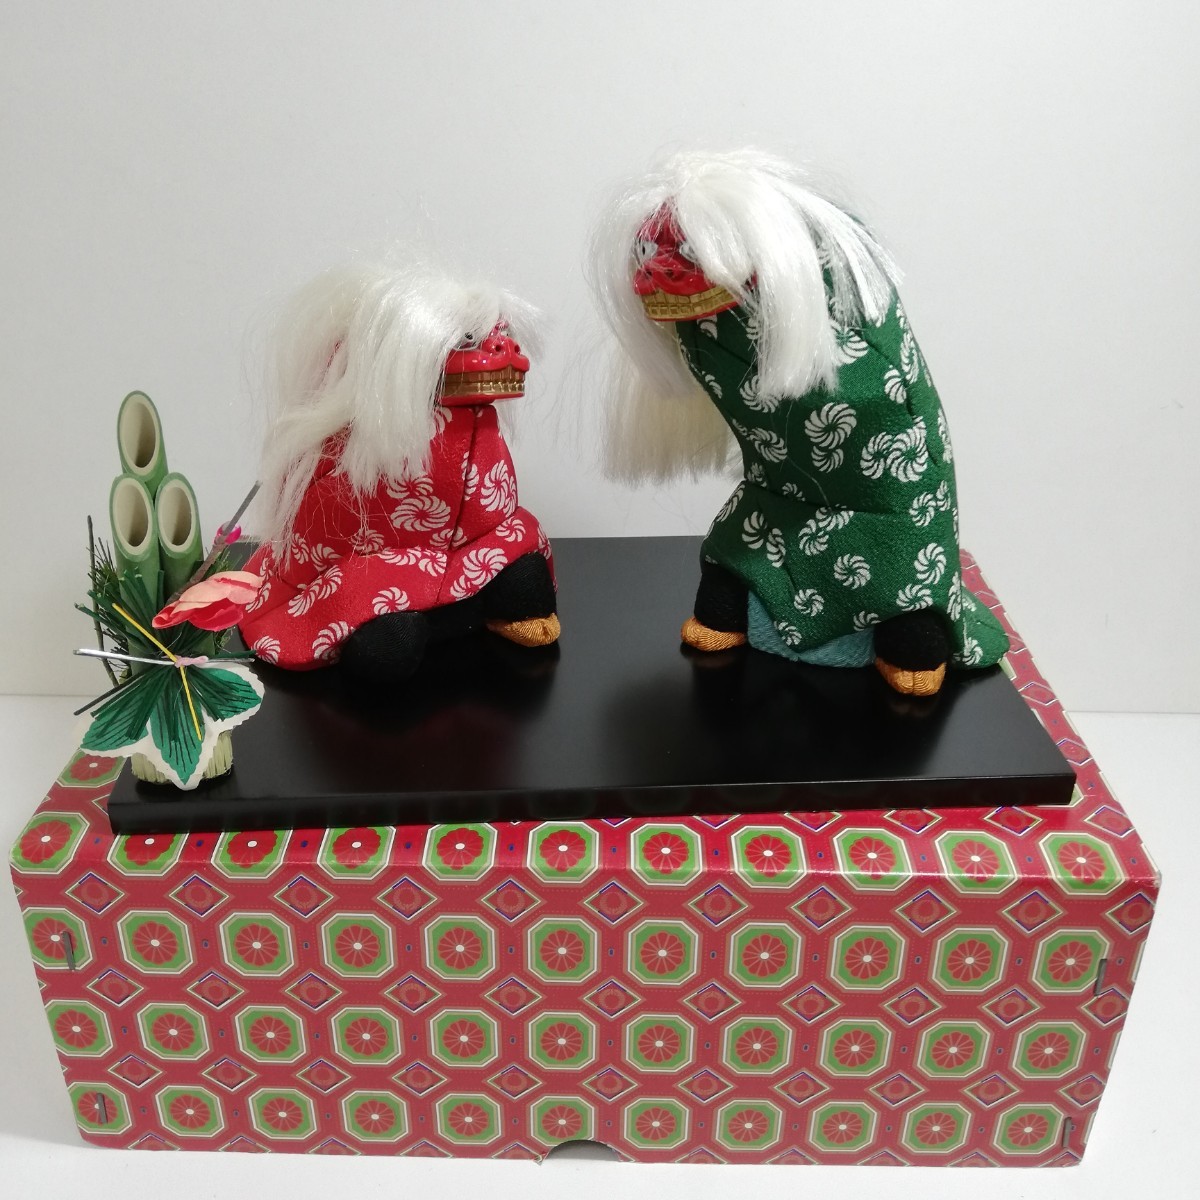  Edo куклы kimekomi праздник лев 23.8cm×14cm [. земля игрушка японская кукла традиция изделие прикладного искусства Япония изобразительное искусство Showa Retro ]